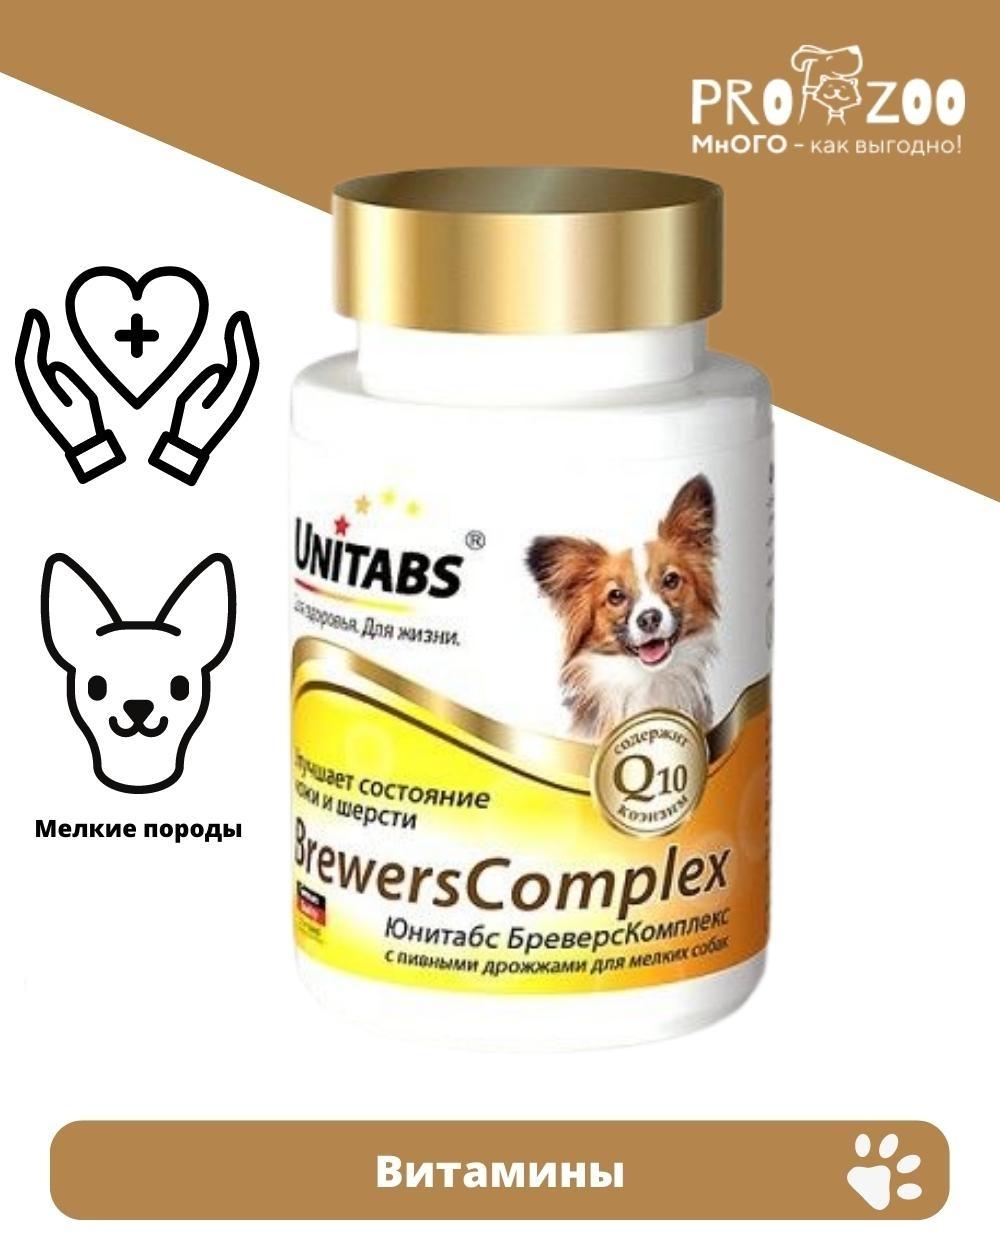 Витамины Unitabs BrewersComplex Mini для кожи и шерсти для собак мелких пород, 200 шт 1